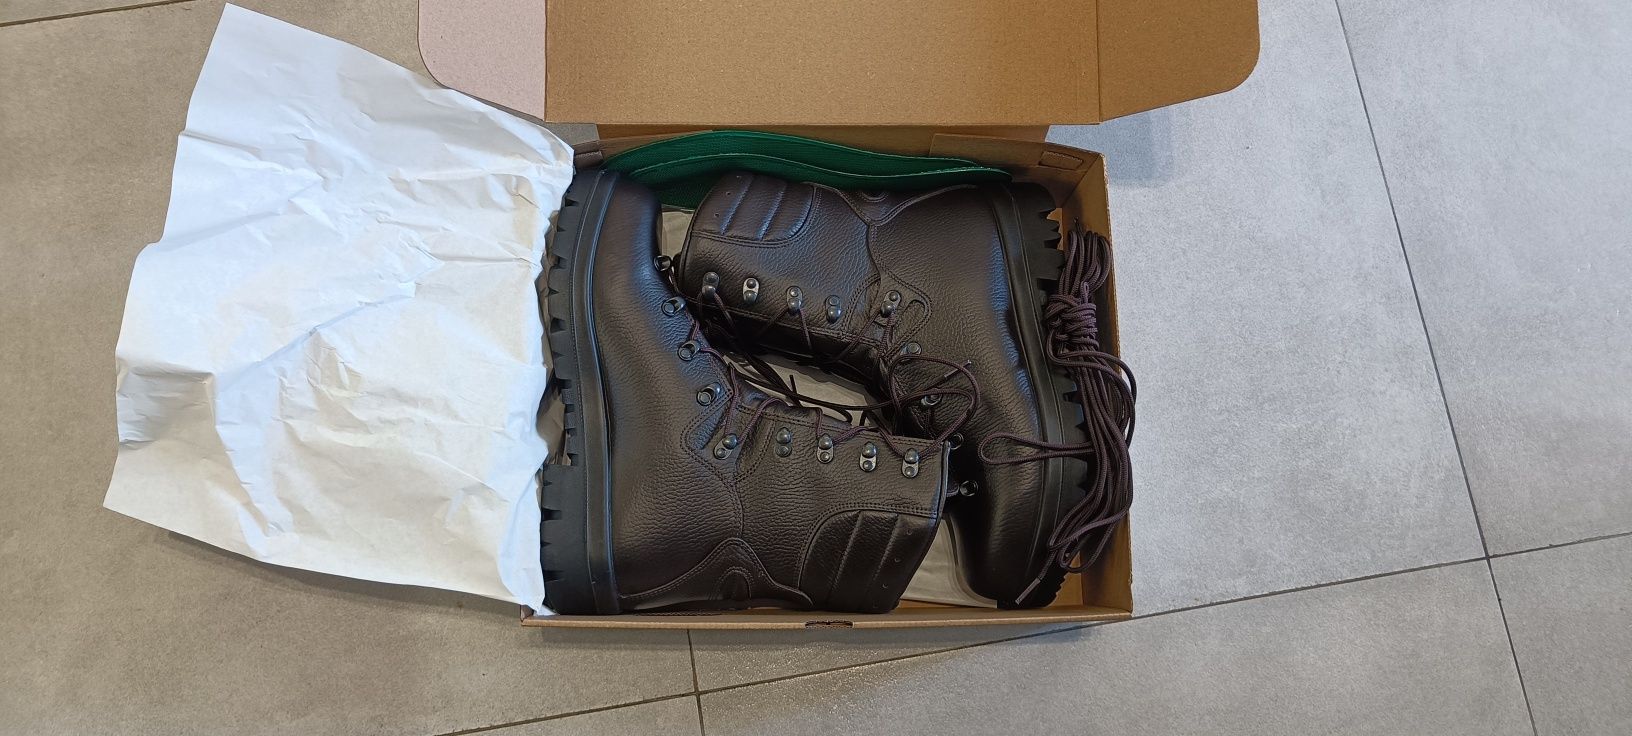 Buty wojskowe Trzewiki Zimowe 933A/MON